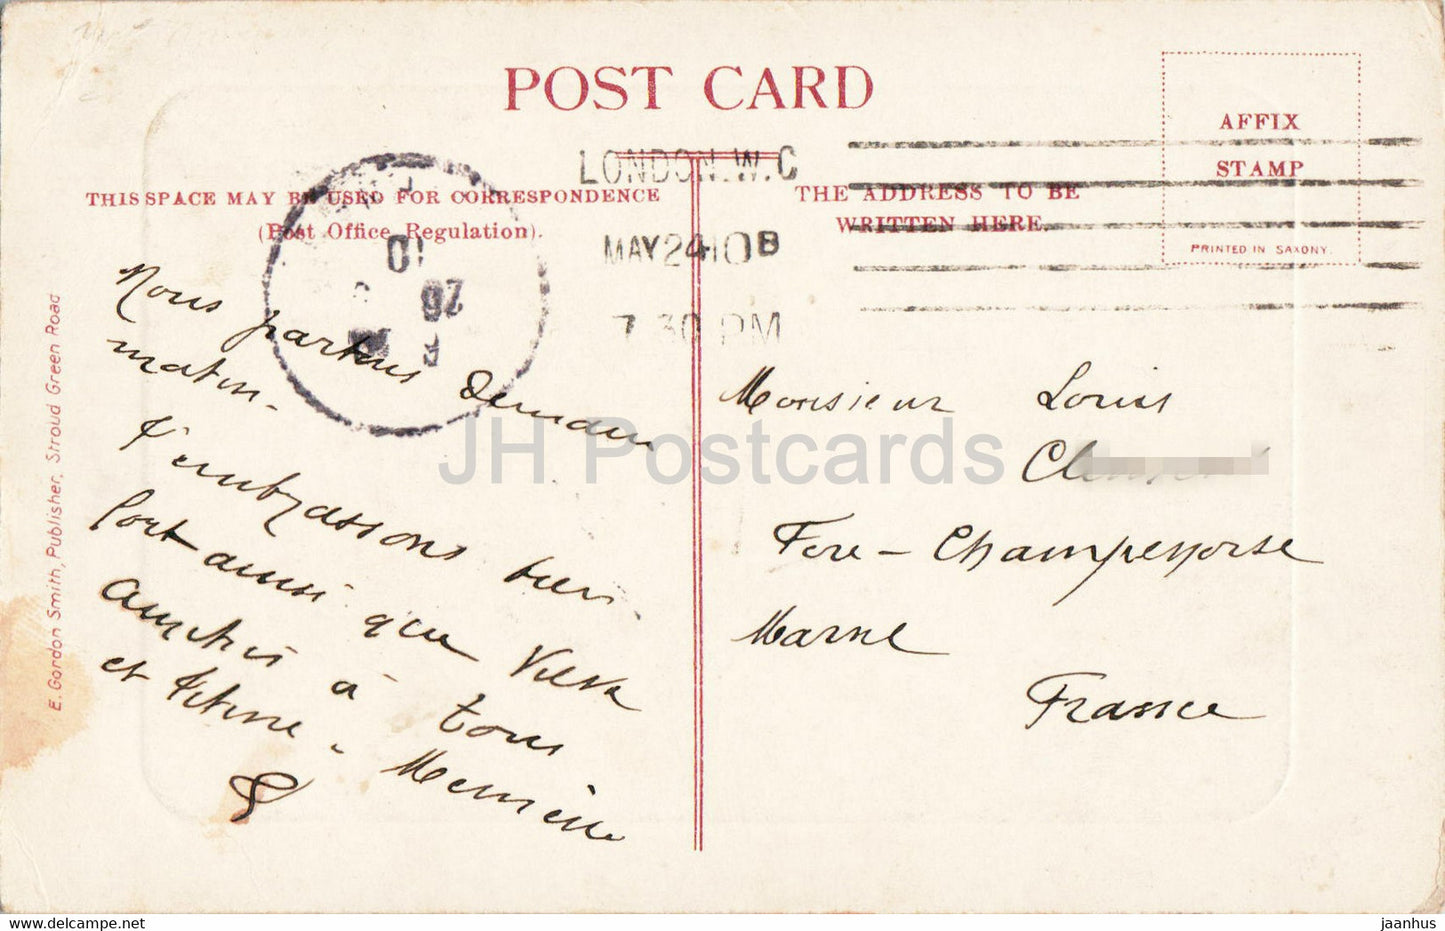 London – St. Pauls von Cheapside – alte Postkarte – England – 1910 – Vereinigtes Königreich – gebraucht